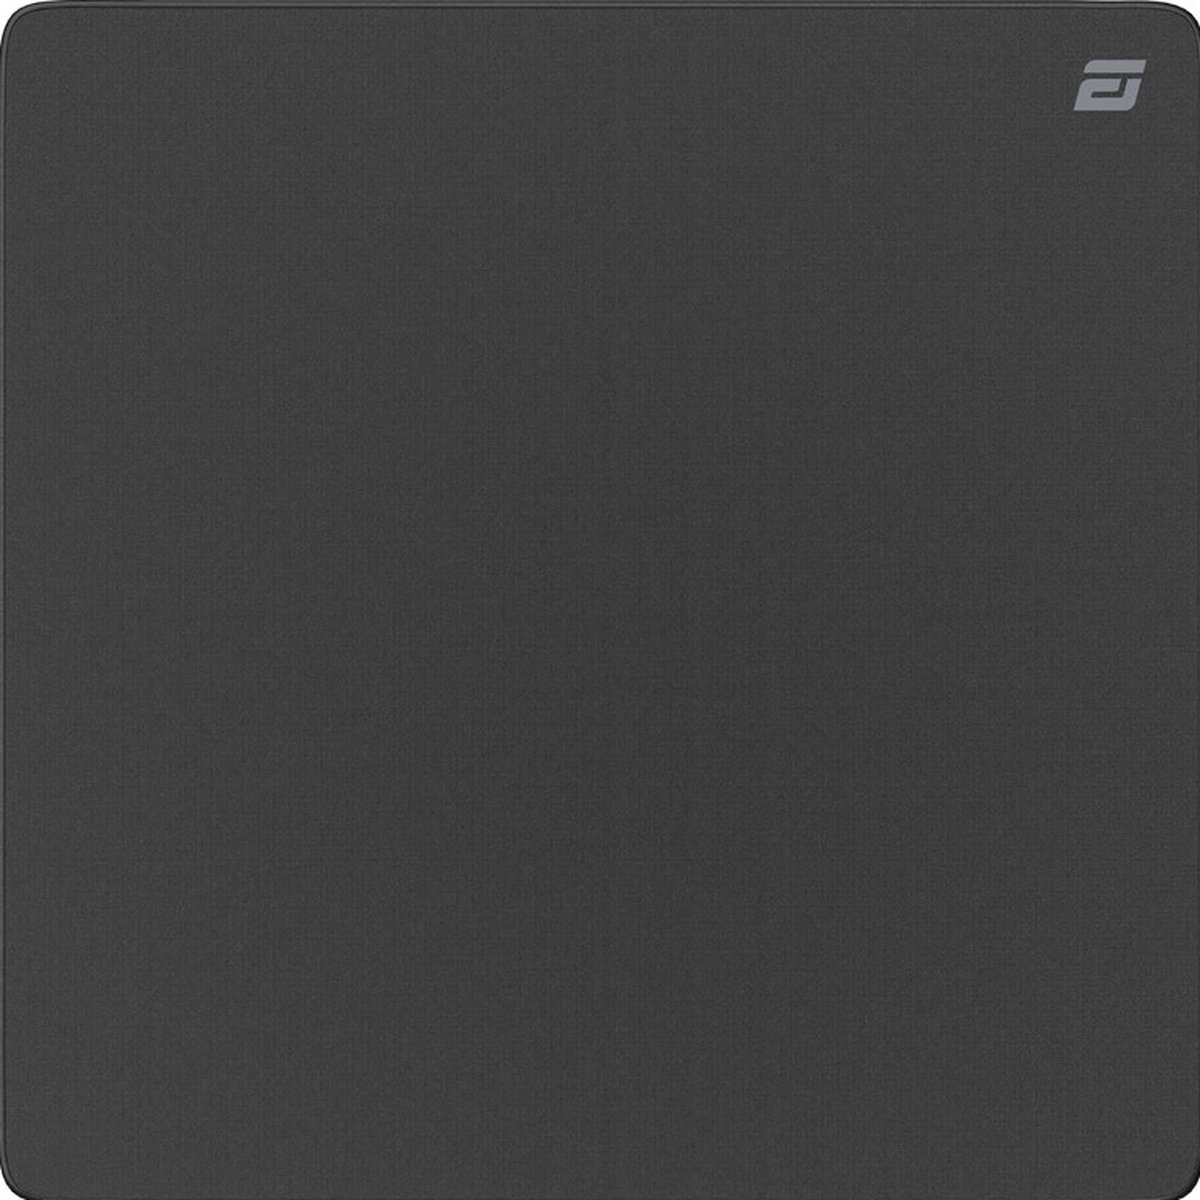 Endgame Gear EM-C Plus PORON - Gaming muismat 500 x 500 mm - Zwart